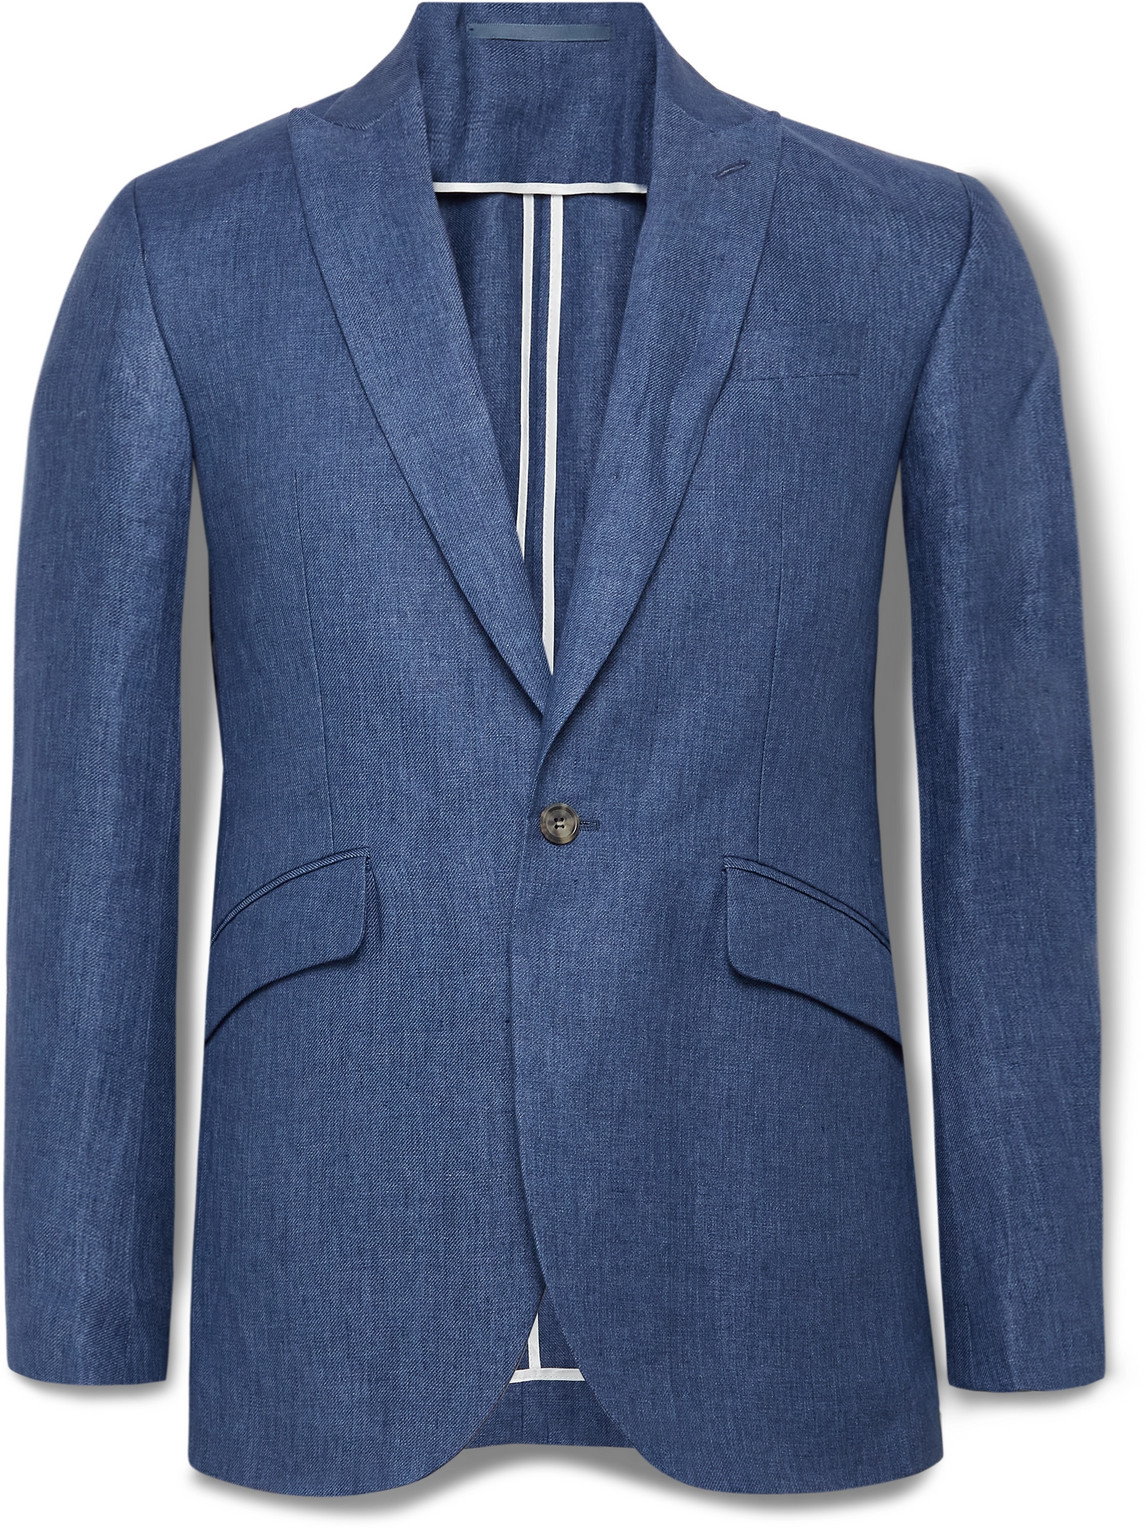 Ebury Slim-Fit Linen Suit Jacket